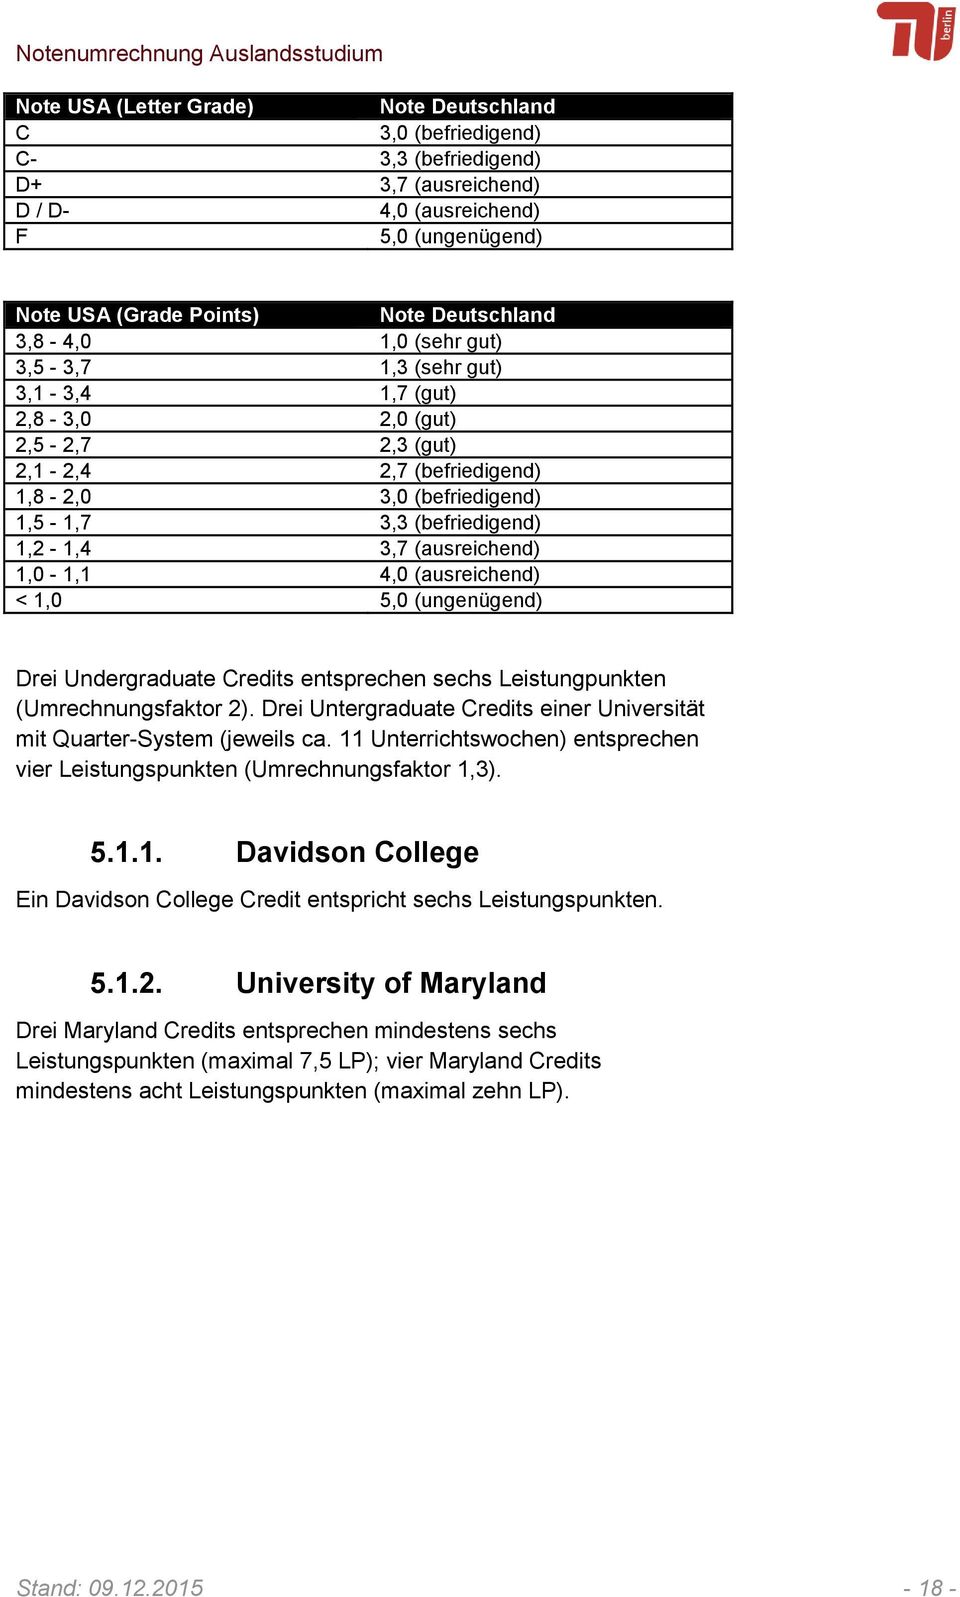 Drei Untergraduate Credits einer Universität mit Quarter-System (jeweils ca. 11 Unterrichtswochen) entsprechen vier Leistungspunkten (Umrechnungsfaktor 1,3). 5.1.1. Davidson College Ein Davidson College Credit entspricht sechs Leistungspunkten.